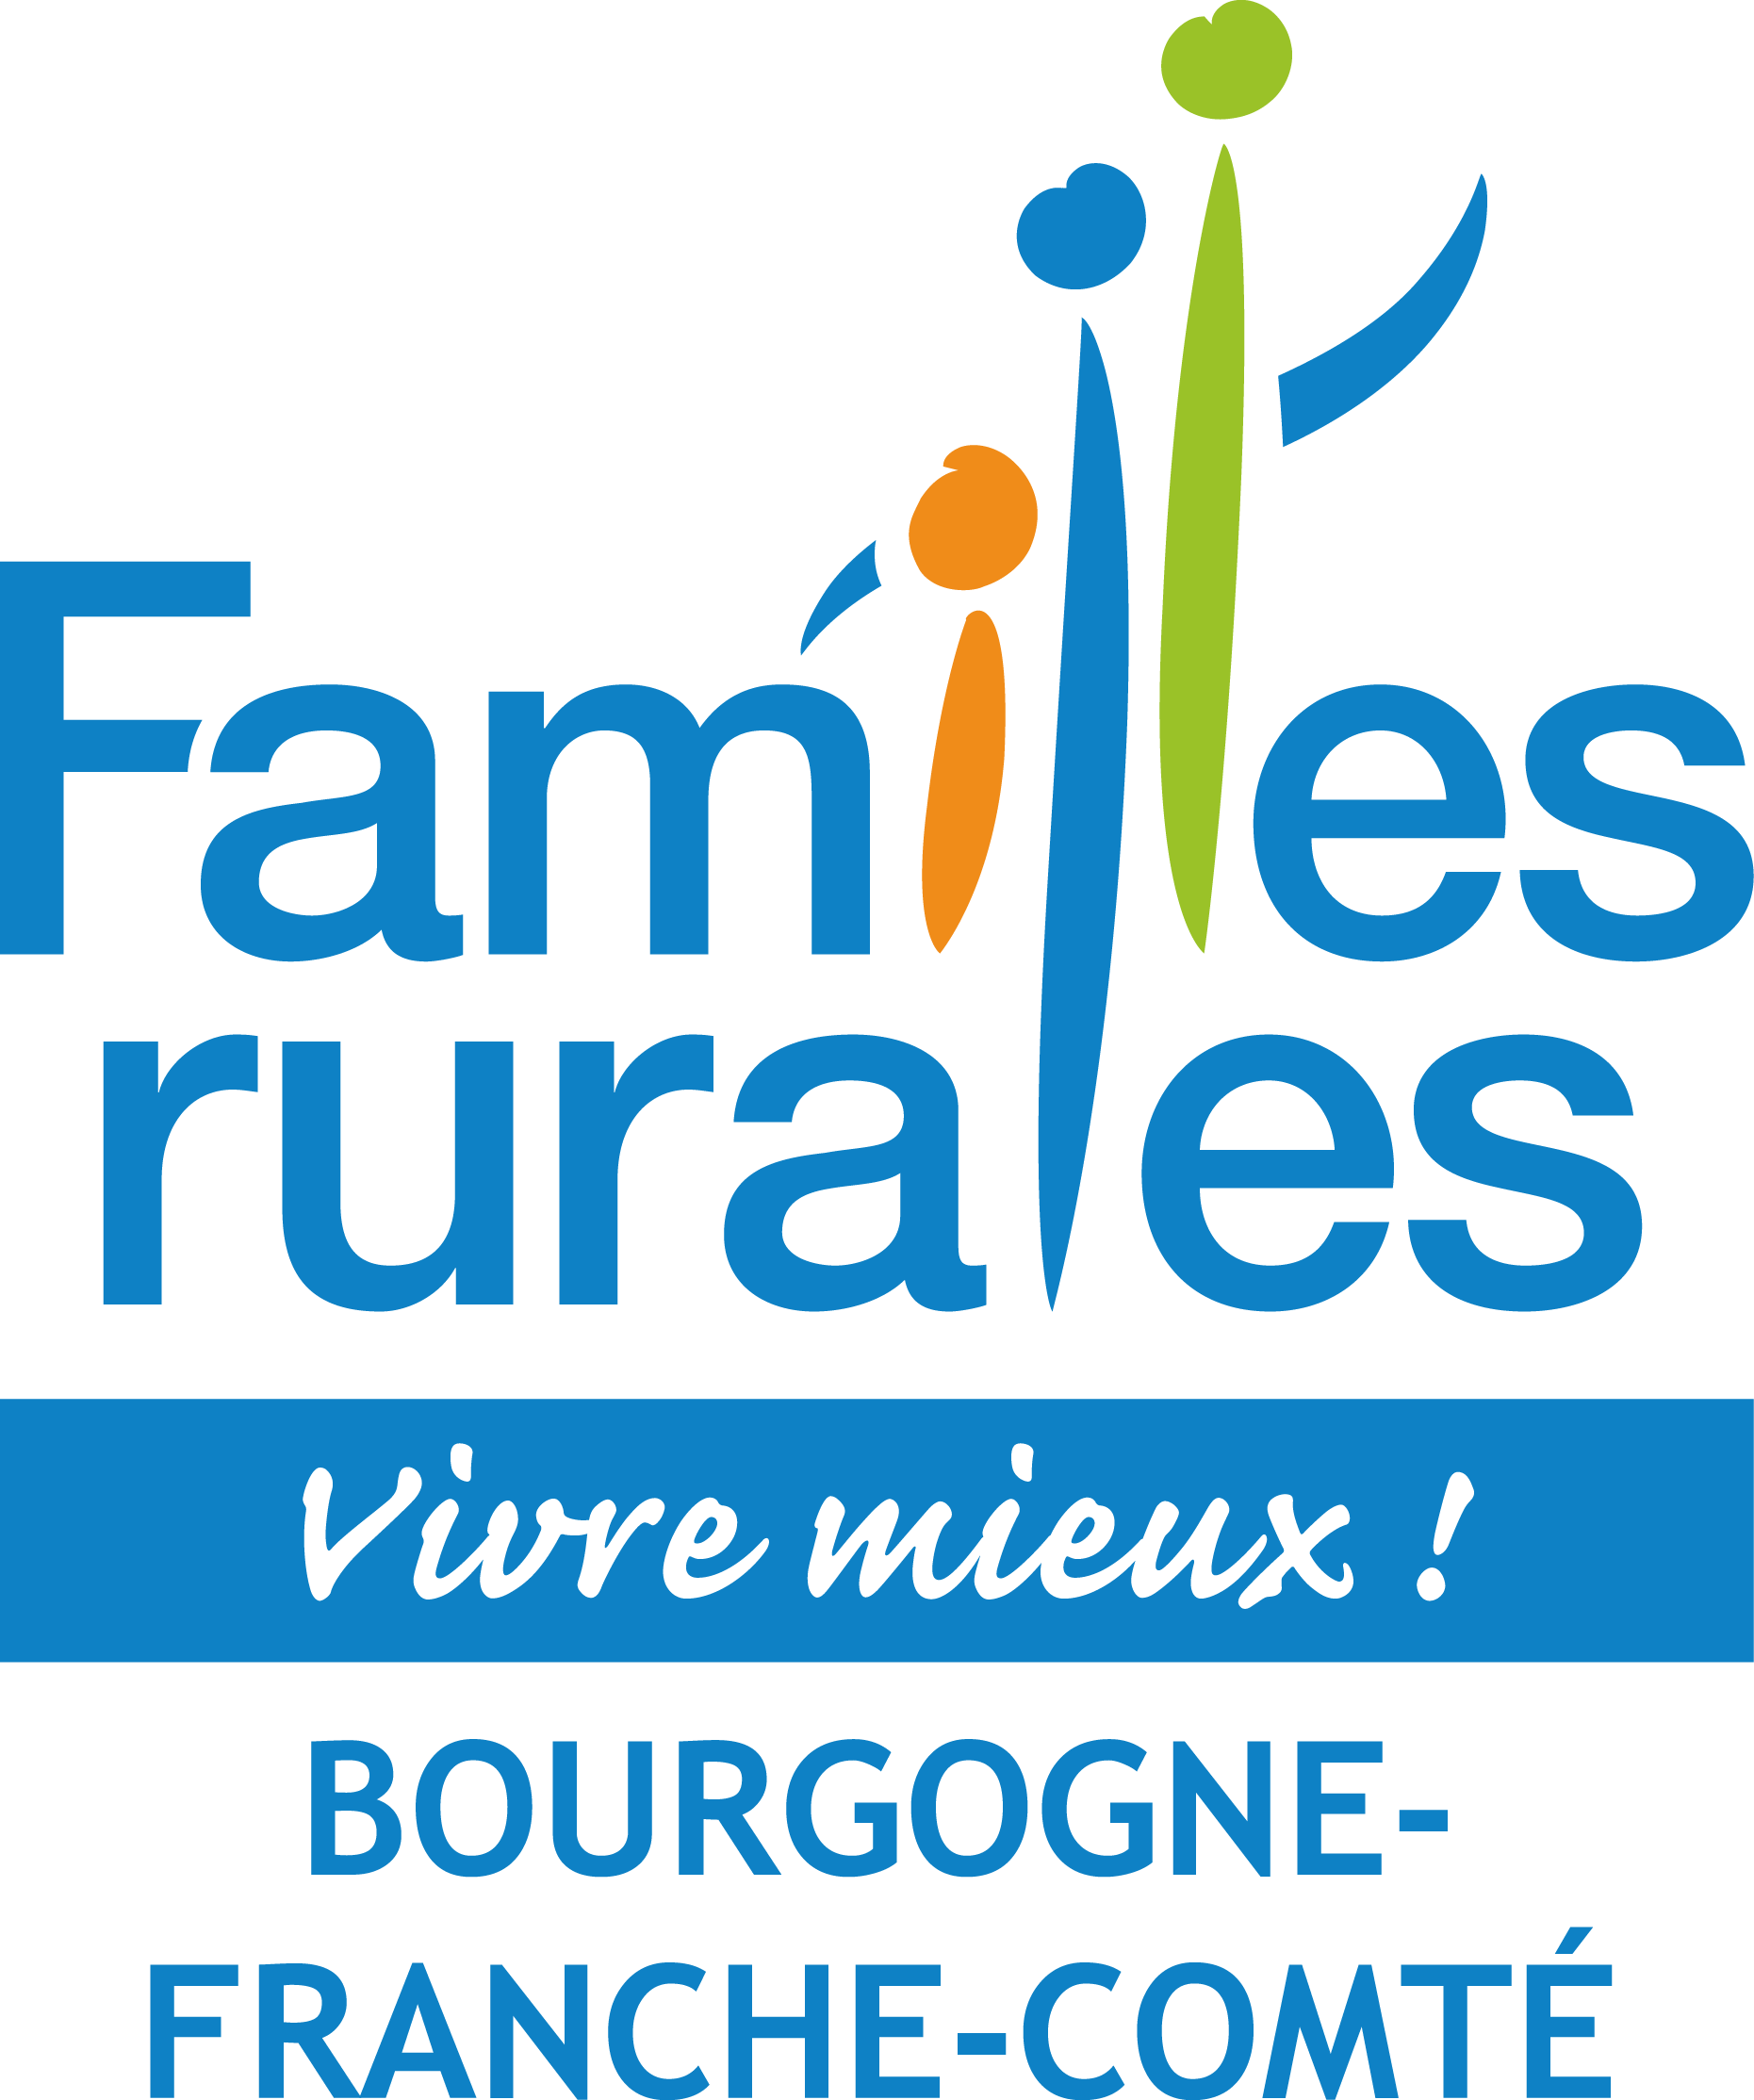 logo_bourgogne_fc.png